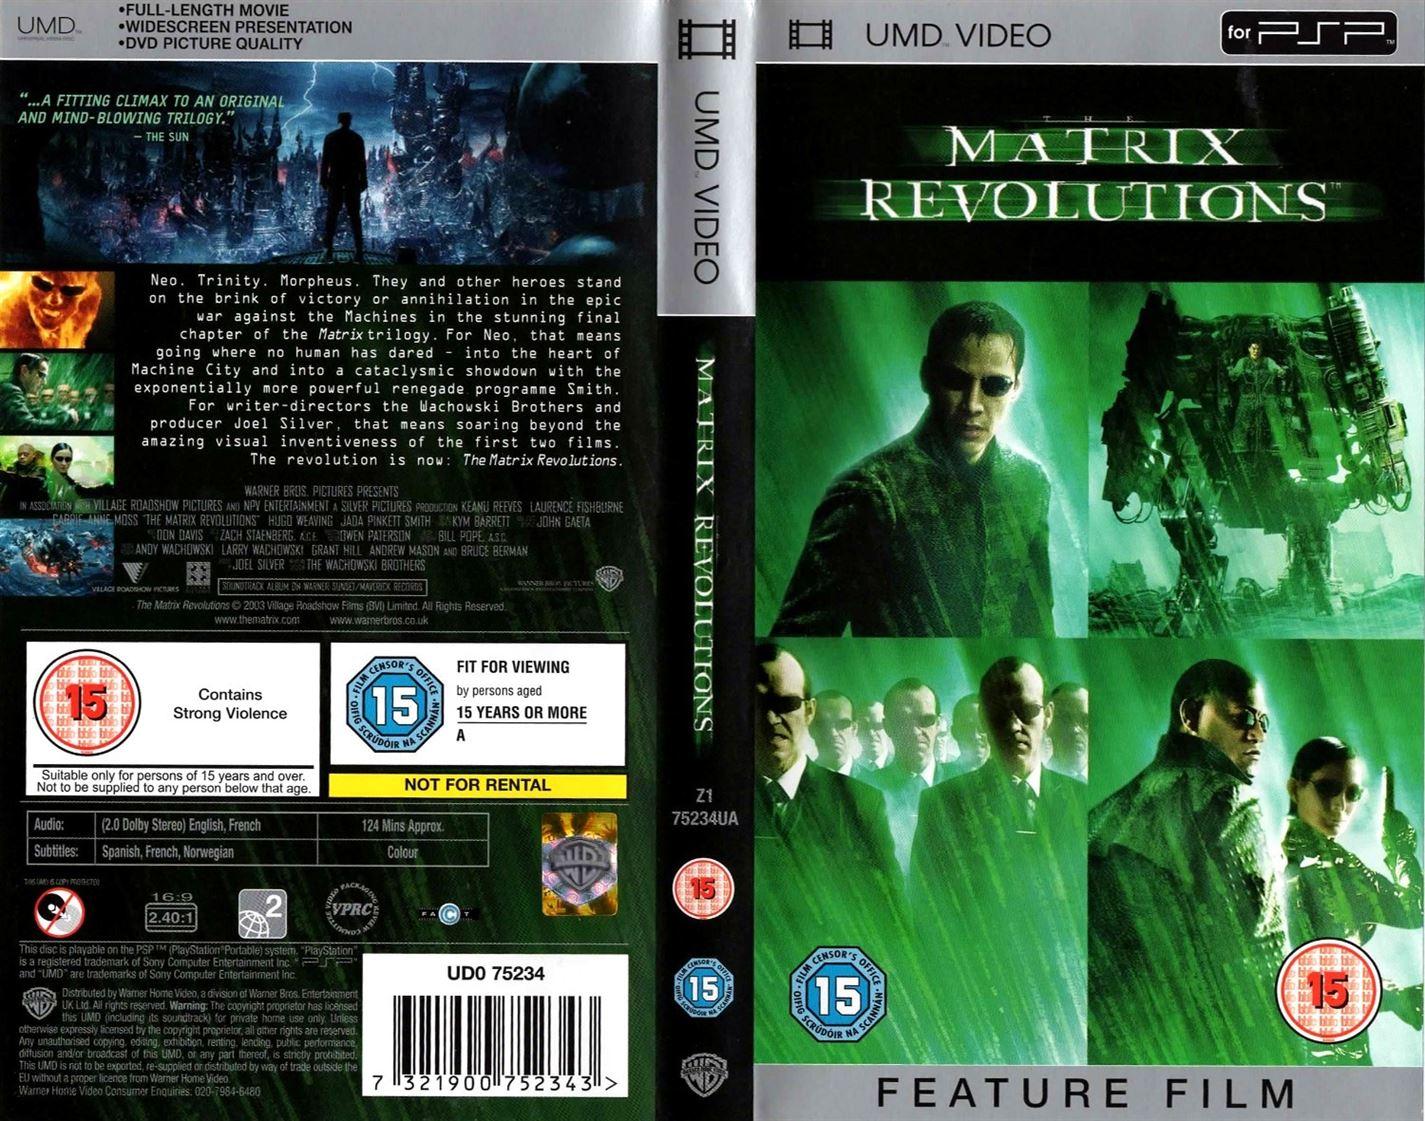 Matrix Revolutions (UMD Mini for PSP) - UK Seller